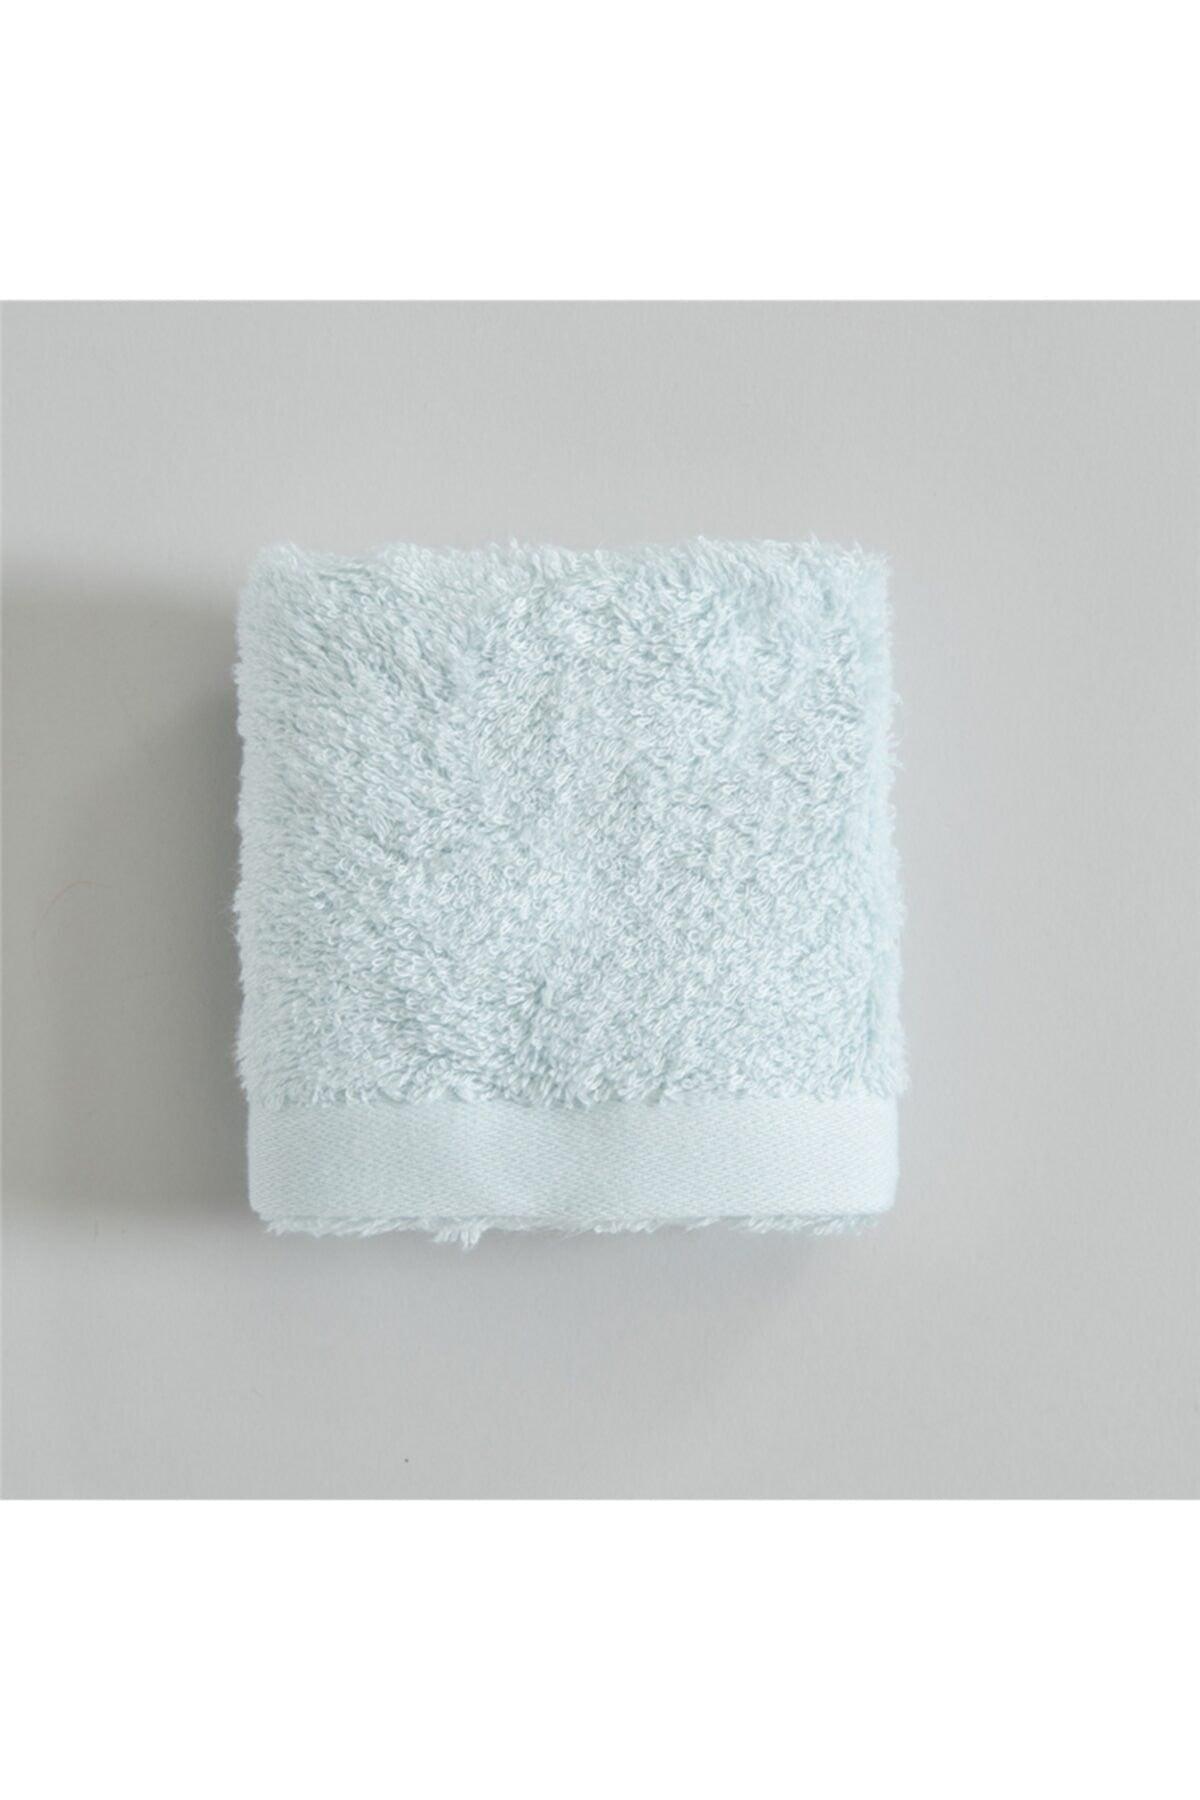 Solid Hand Towel 33x33 Cm Light Aqua - Swordslife